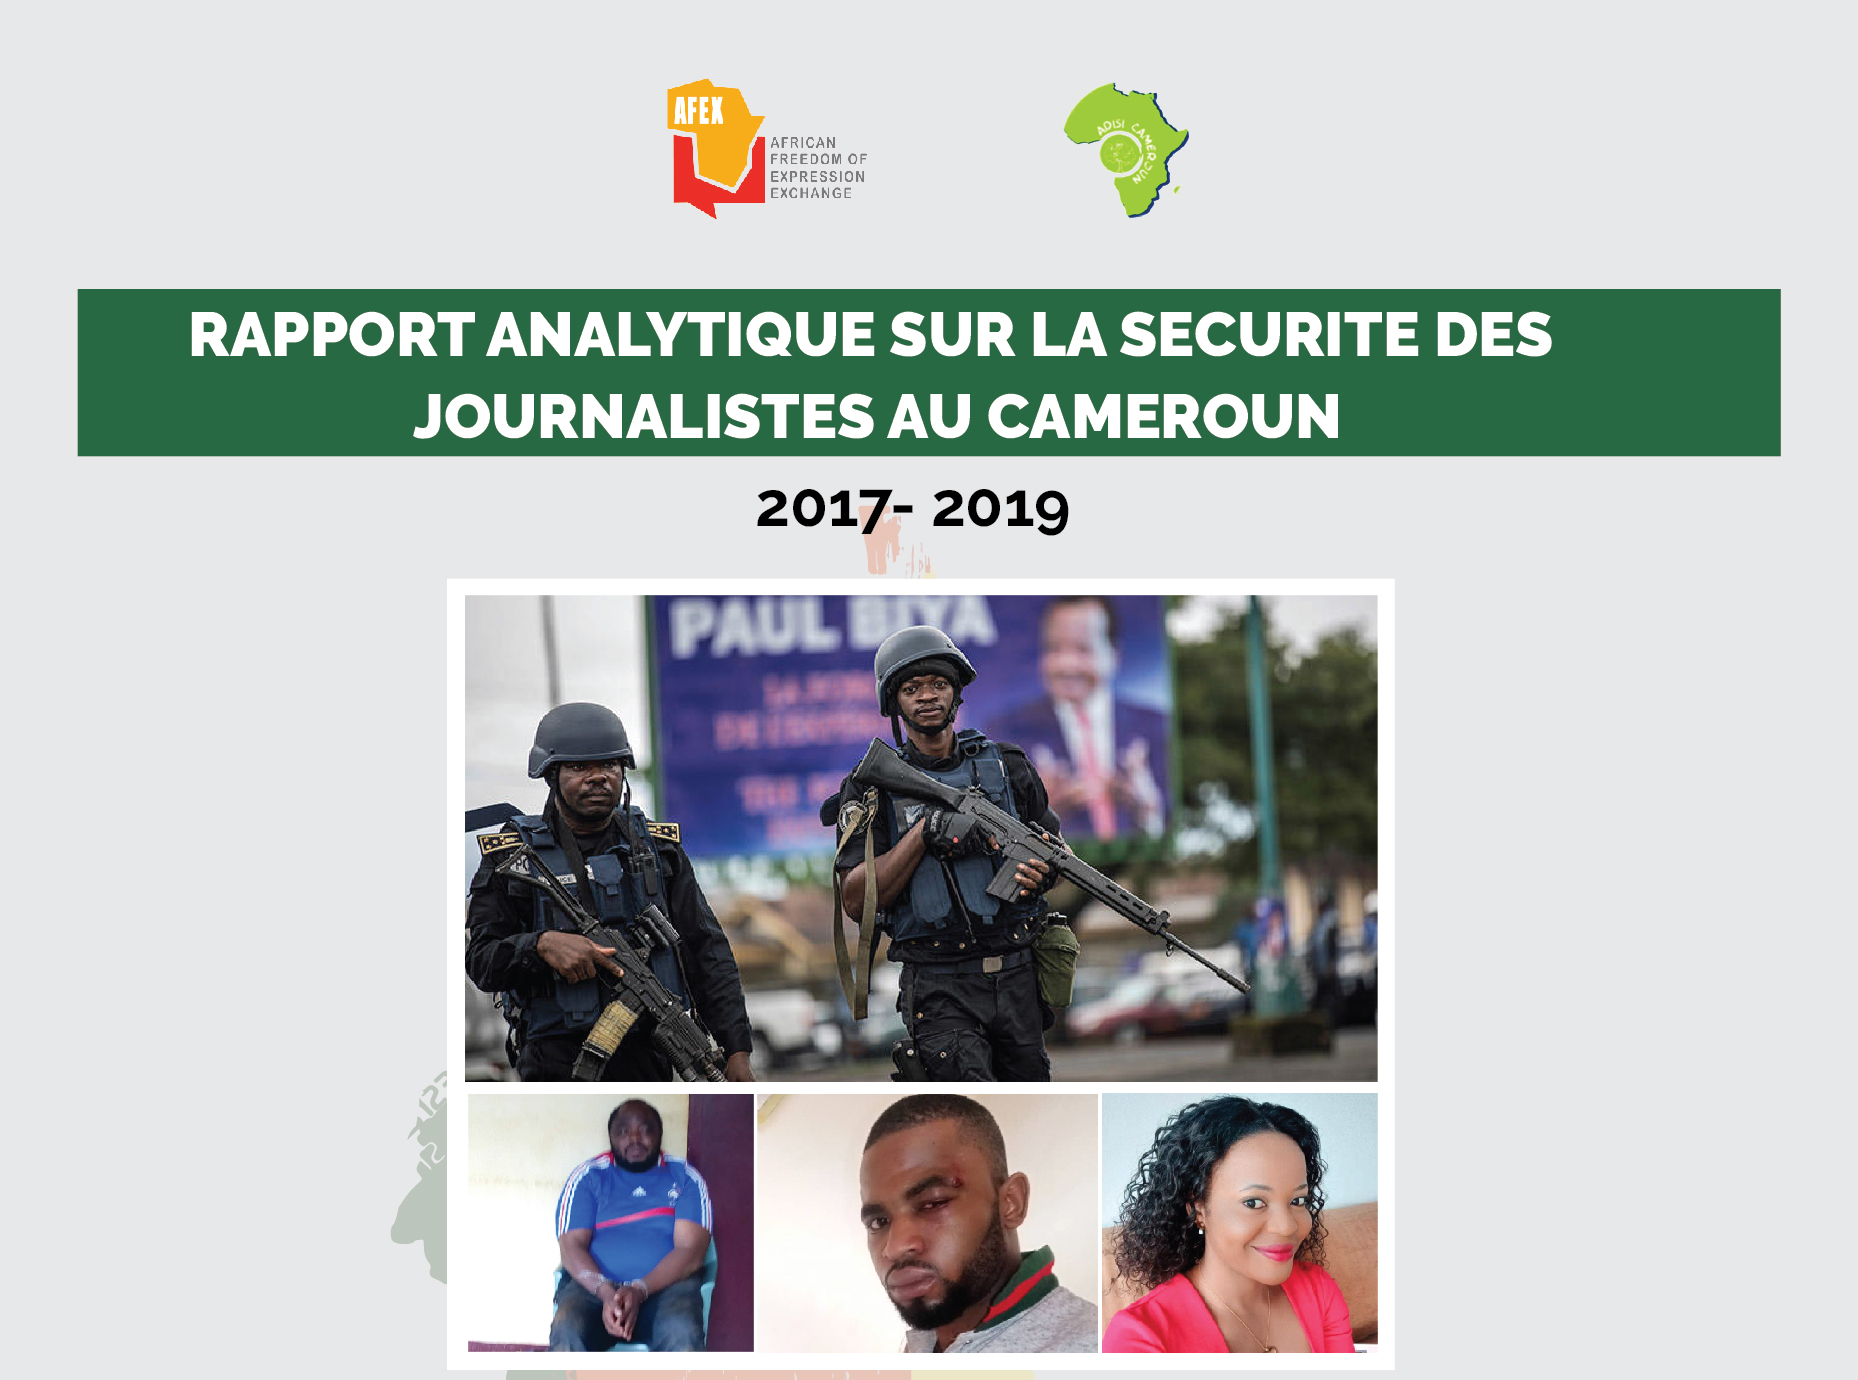 Médias/Cameroun : Une douzaine de journalistes camerounais torturés entre 2017 et 2019